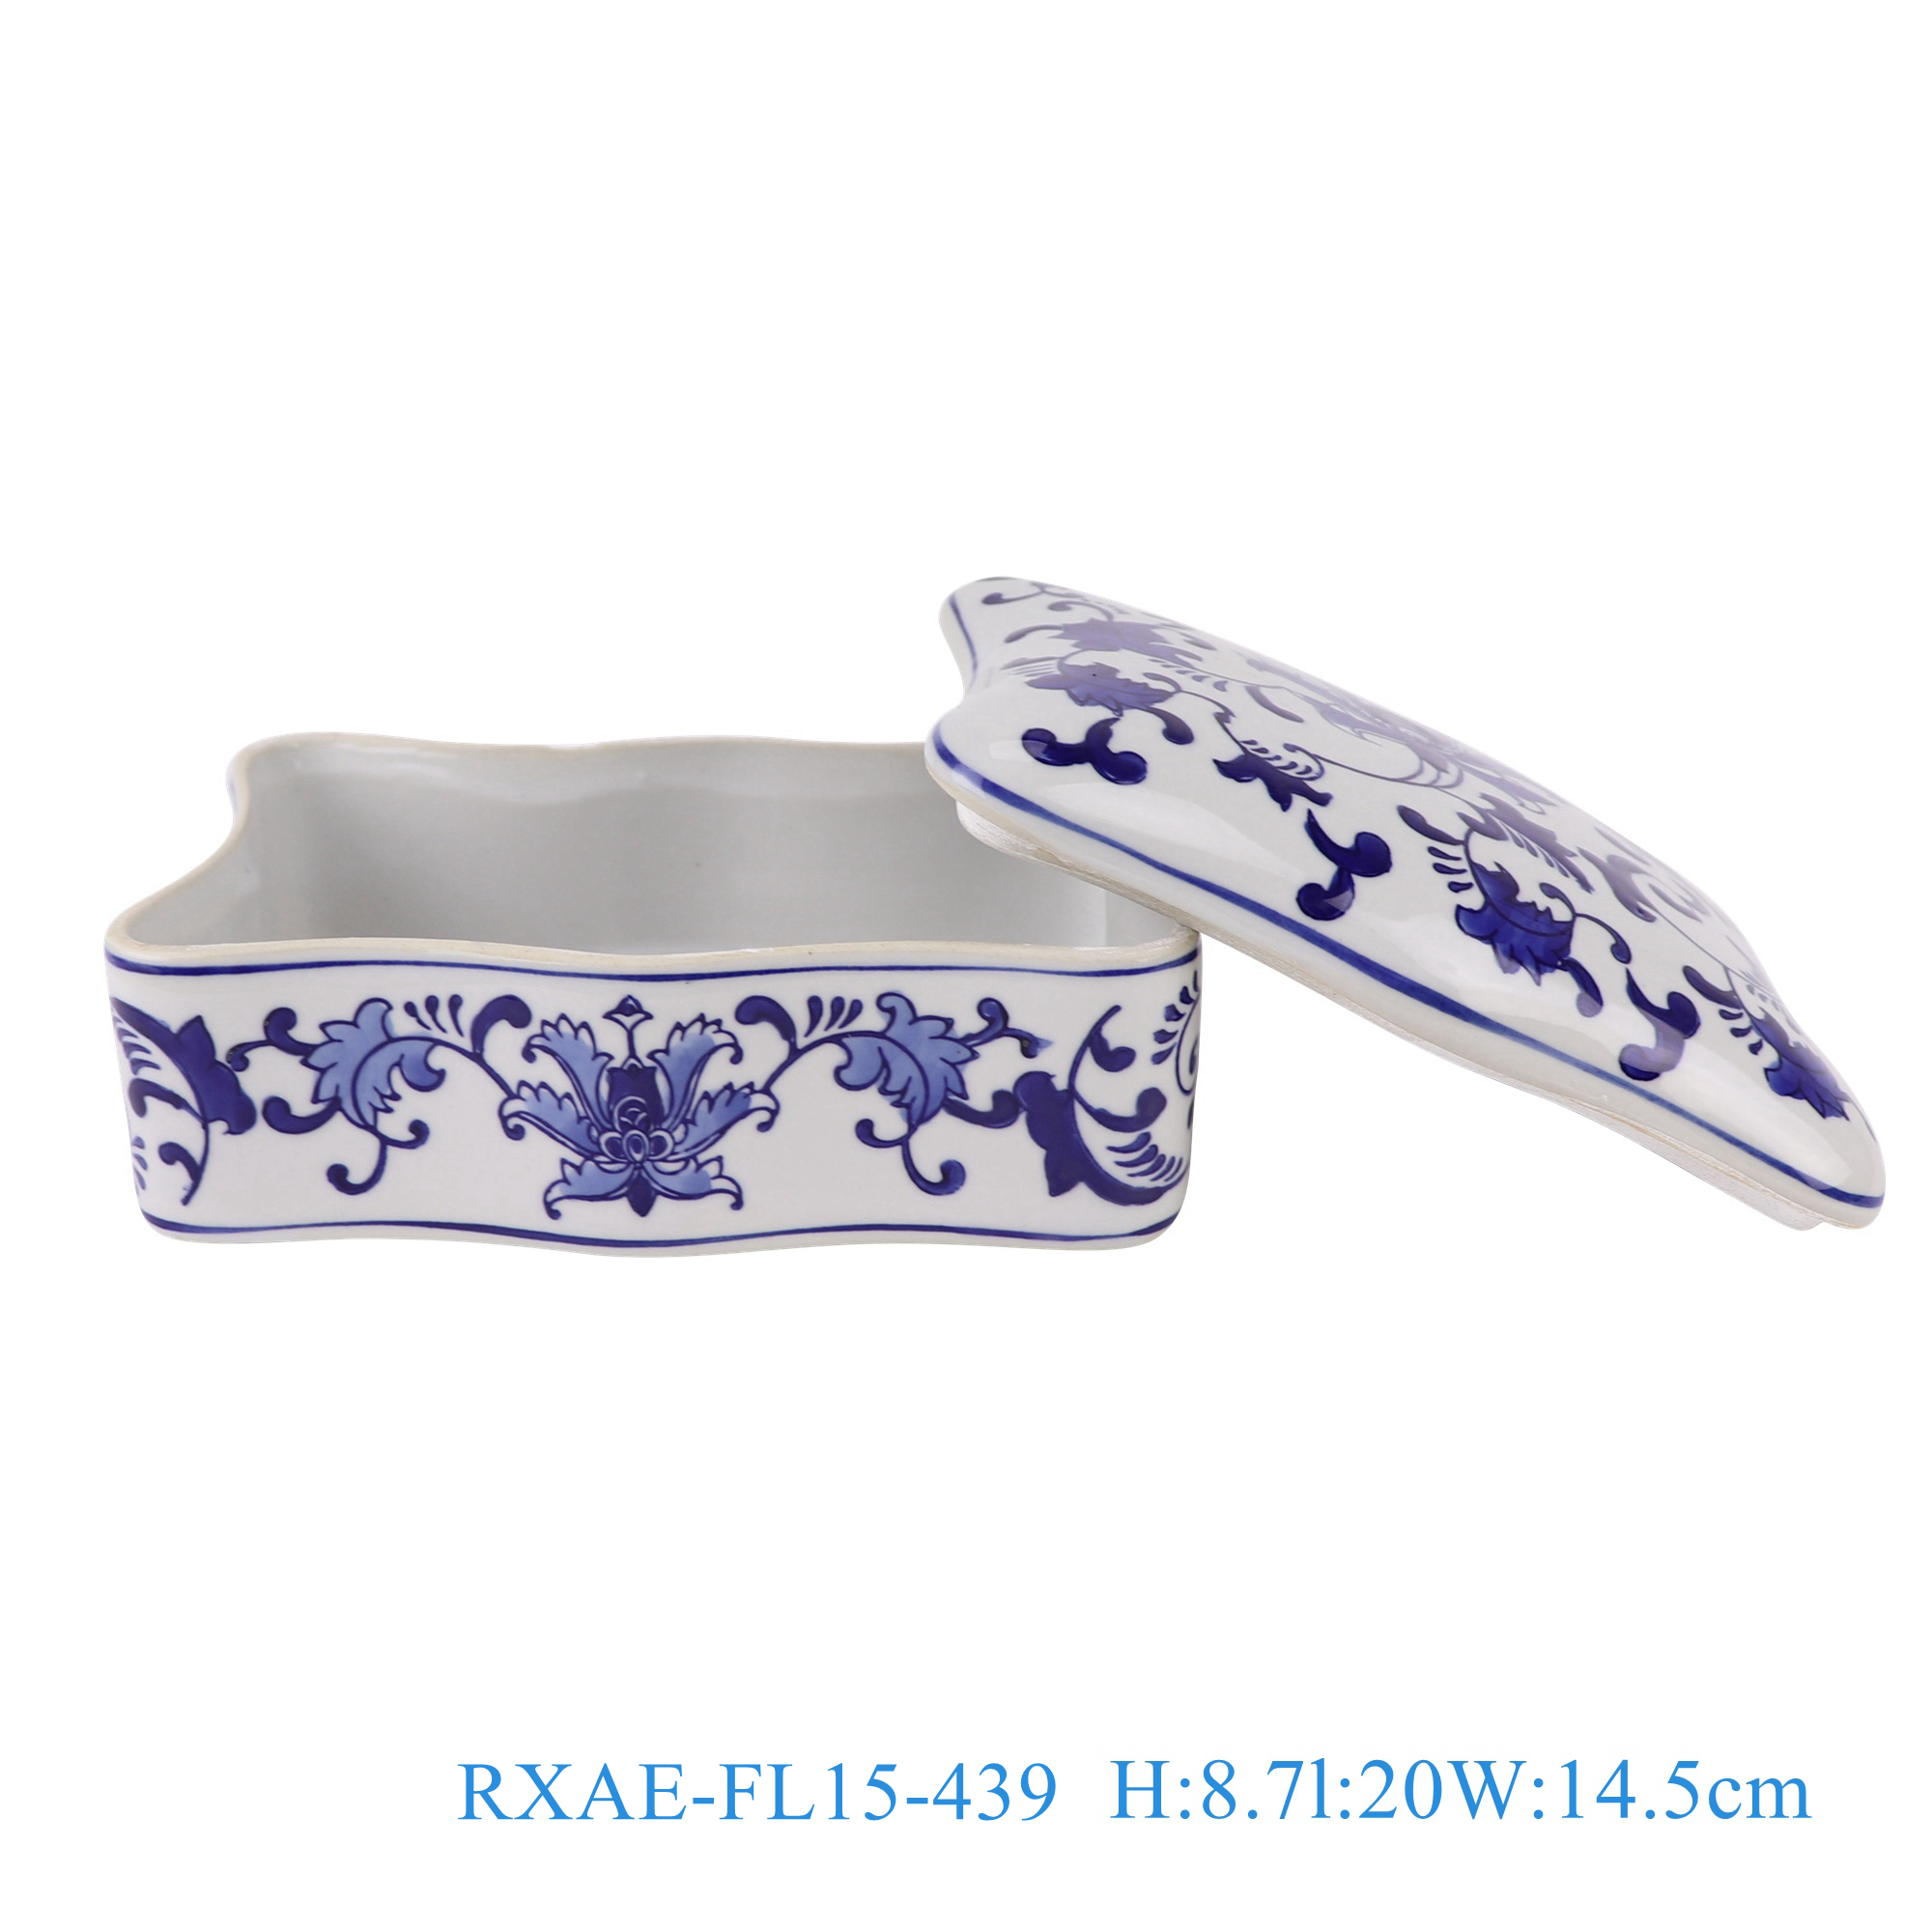 RXAE-FL15-439 Blue and White Porcelain Twisted Flower Patterned Rectangler Storage Box Holder Jar